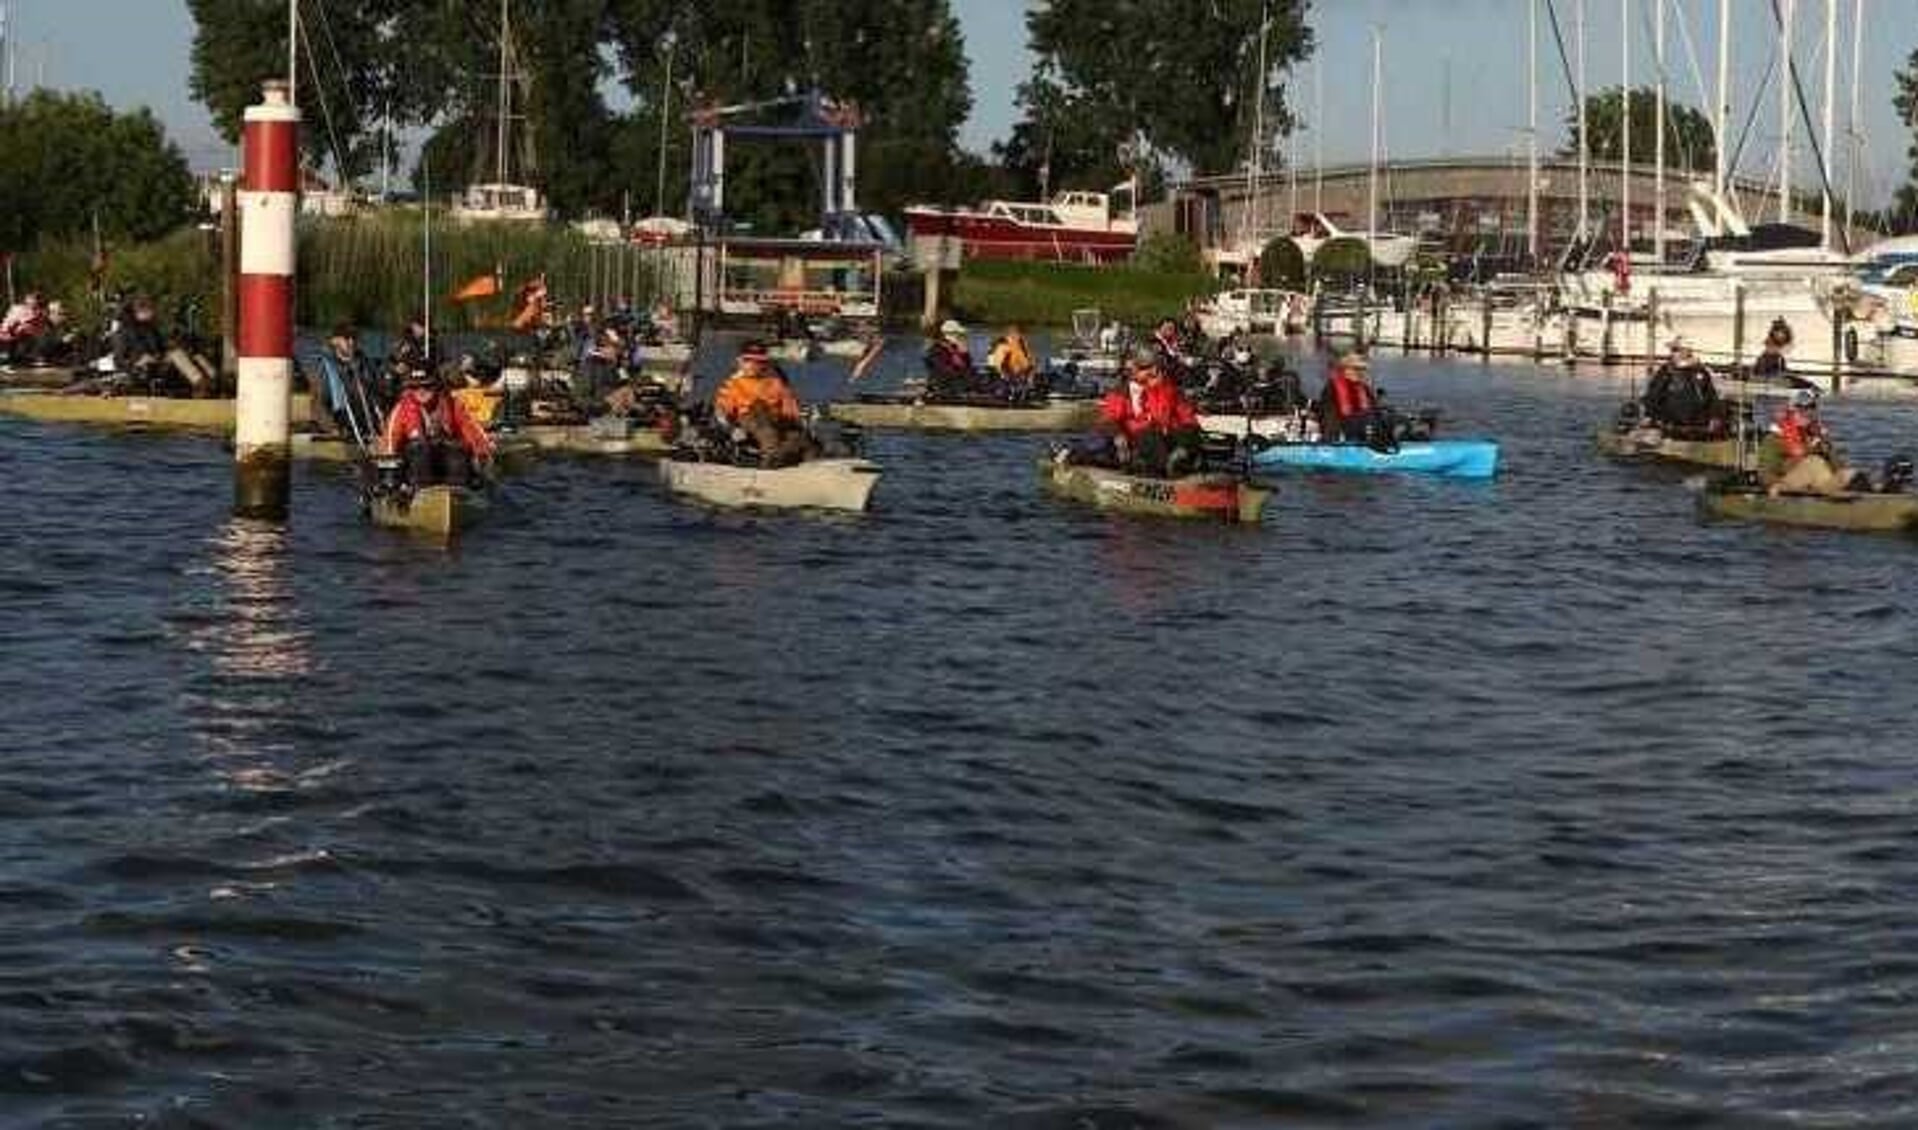 De wedstrijdvissers vertrekken in hun kayak vanuit de jachthaven in Stad aan 't Haringvliet. 